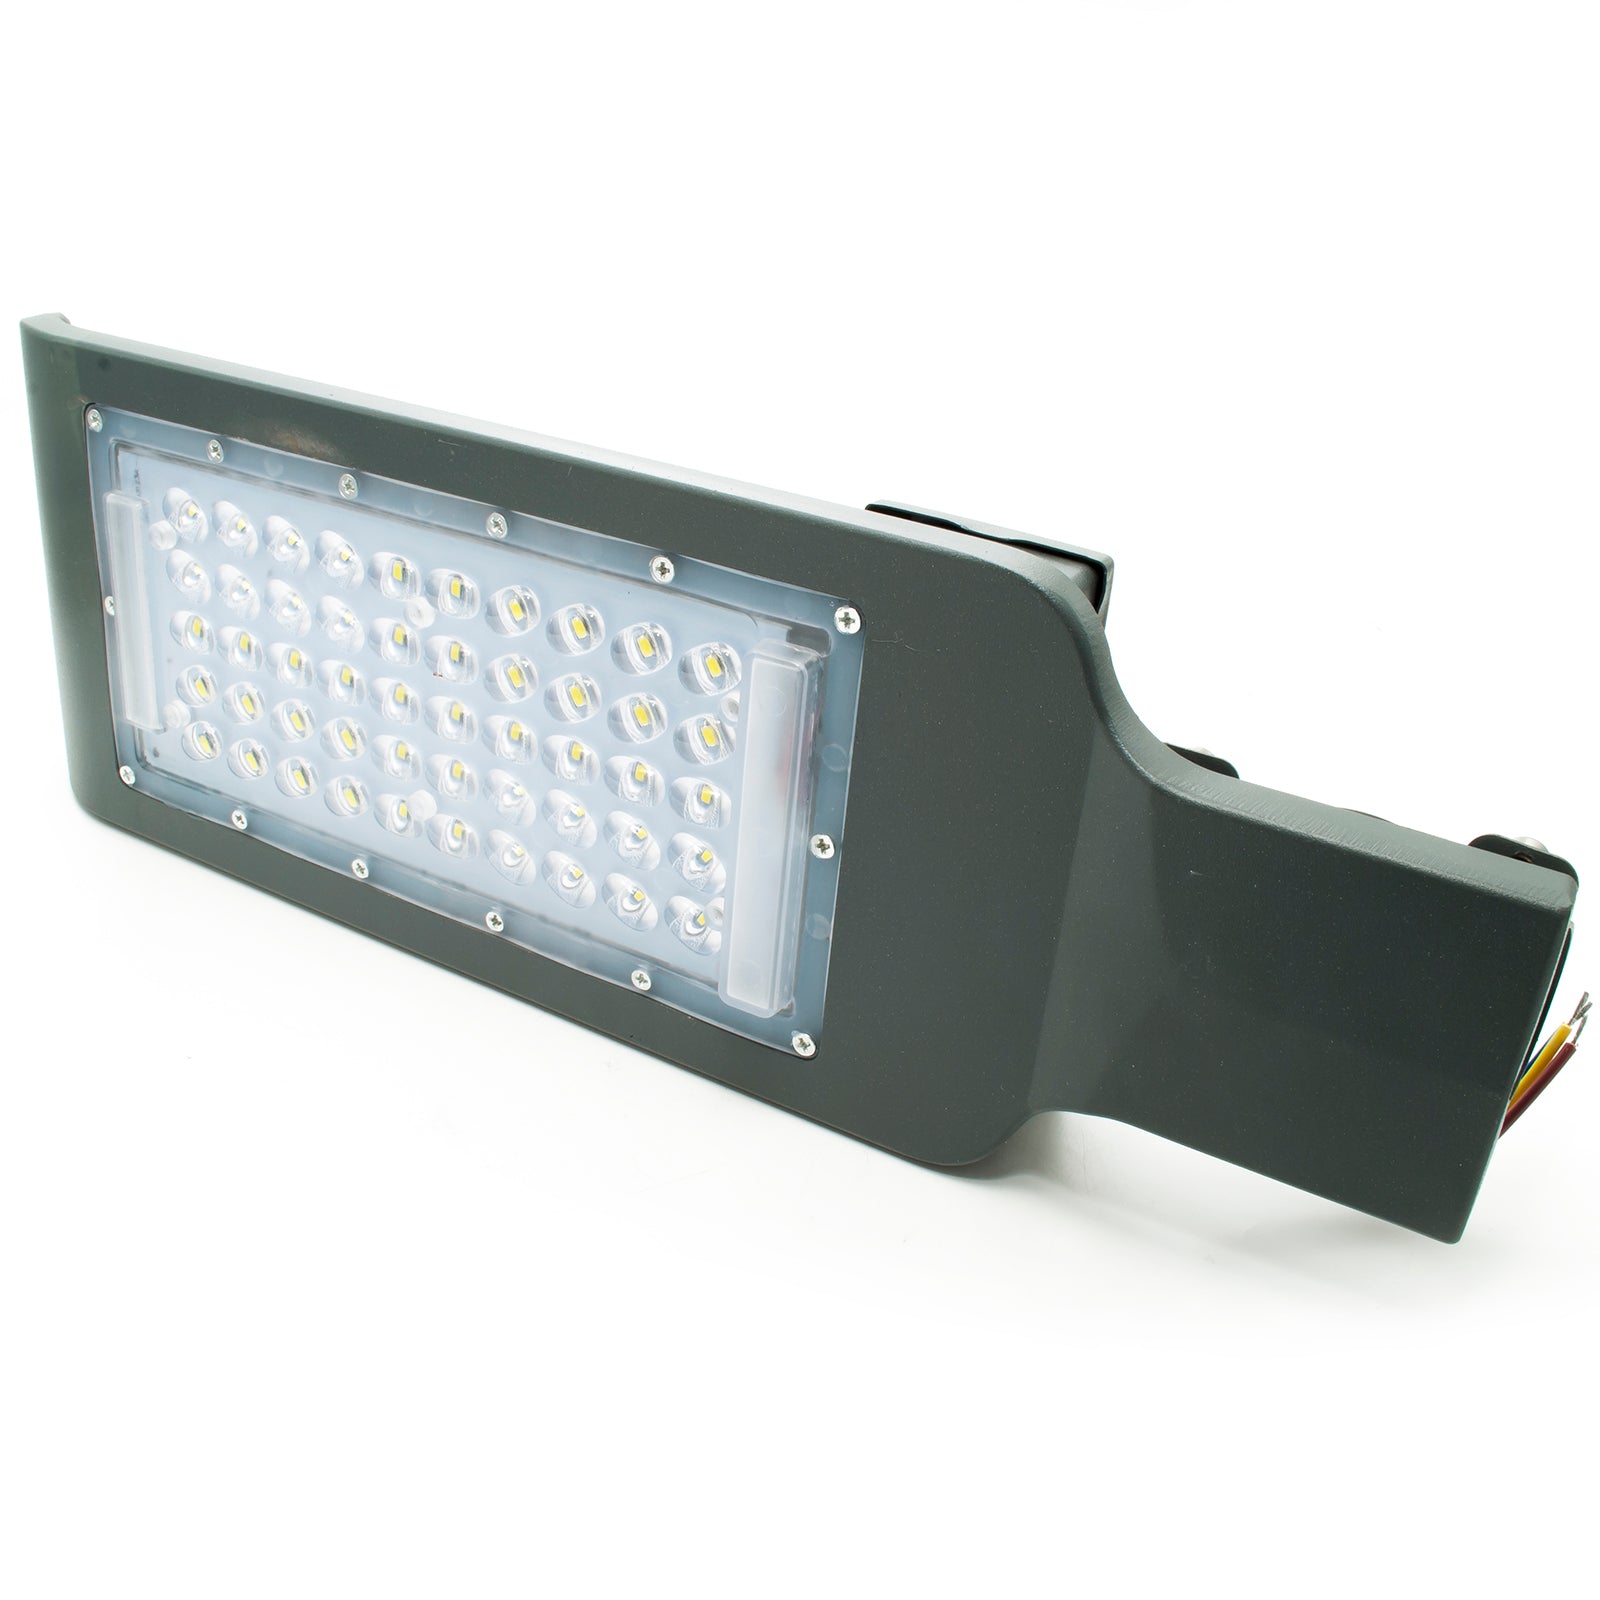 Faro armatura stradale LED lampione esterno proiettore luci strada viale sentiero parco 230V luce 6500K potenza 100W